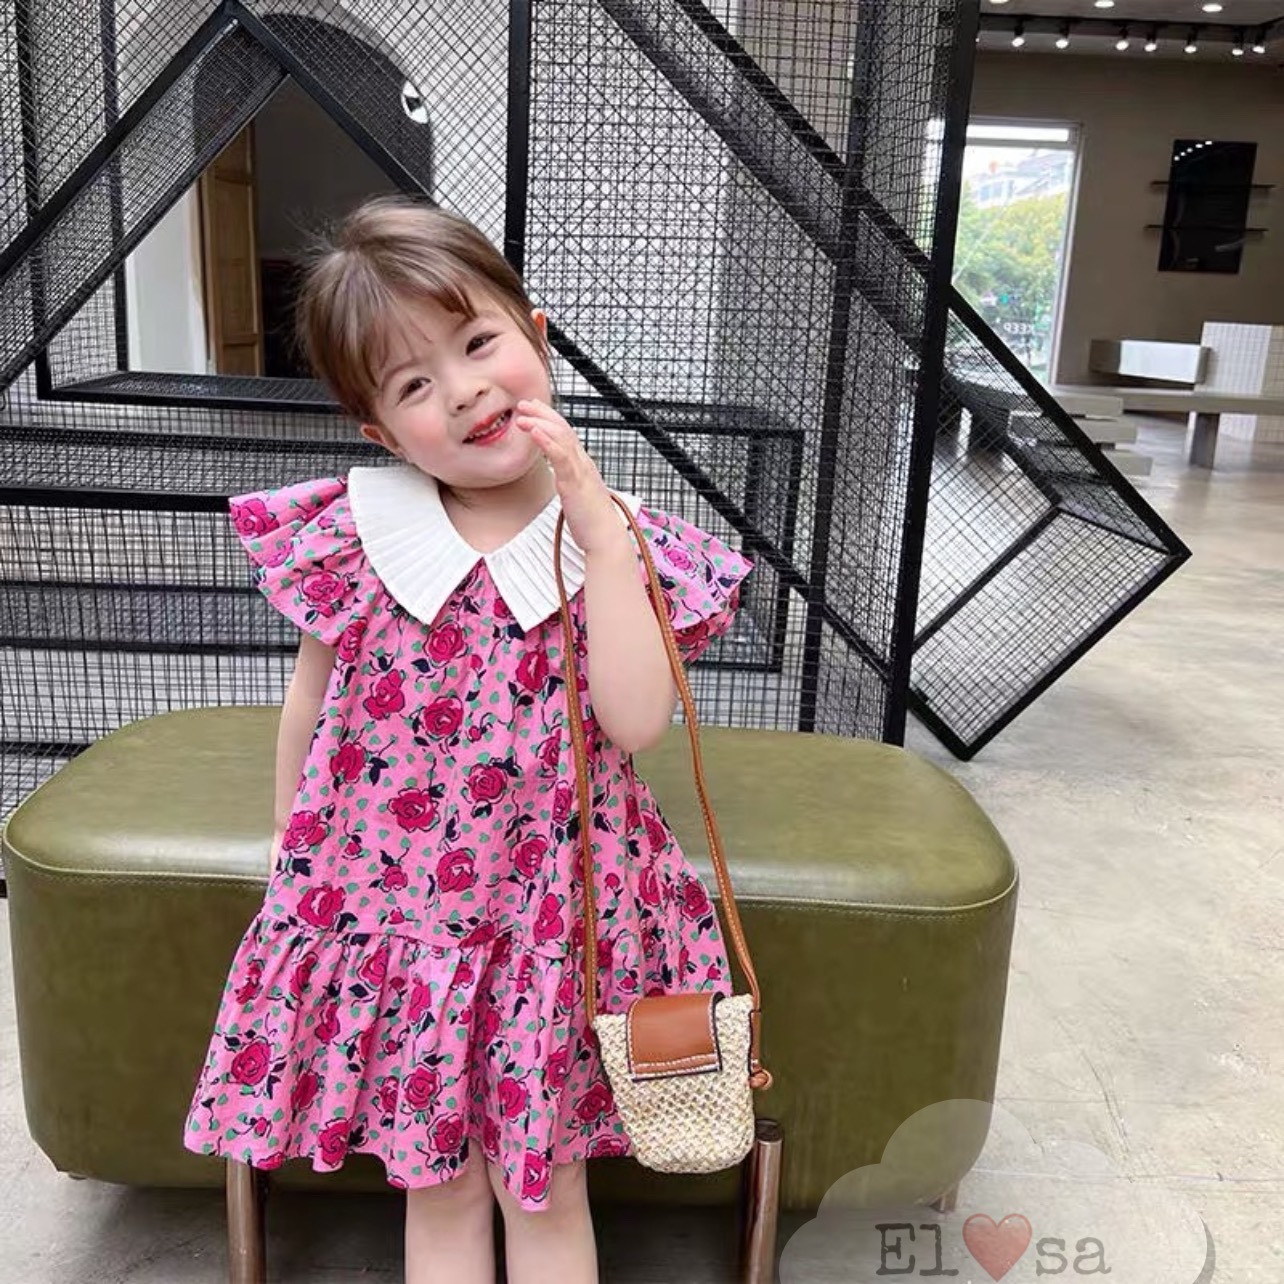 Mua Váy hoa nhí Hàn xuất dư Kun Kids chất thô mịn cho bé gái 212 tuổi   Tiki